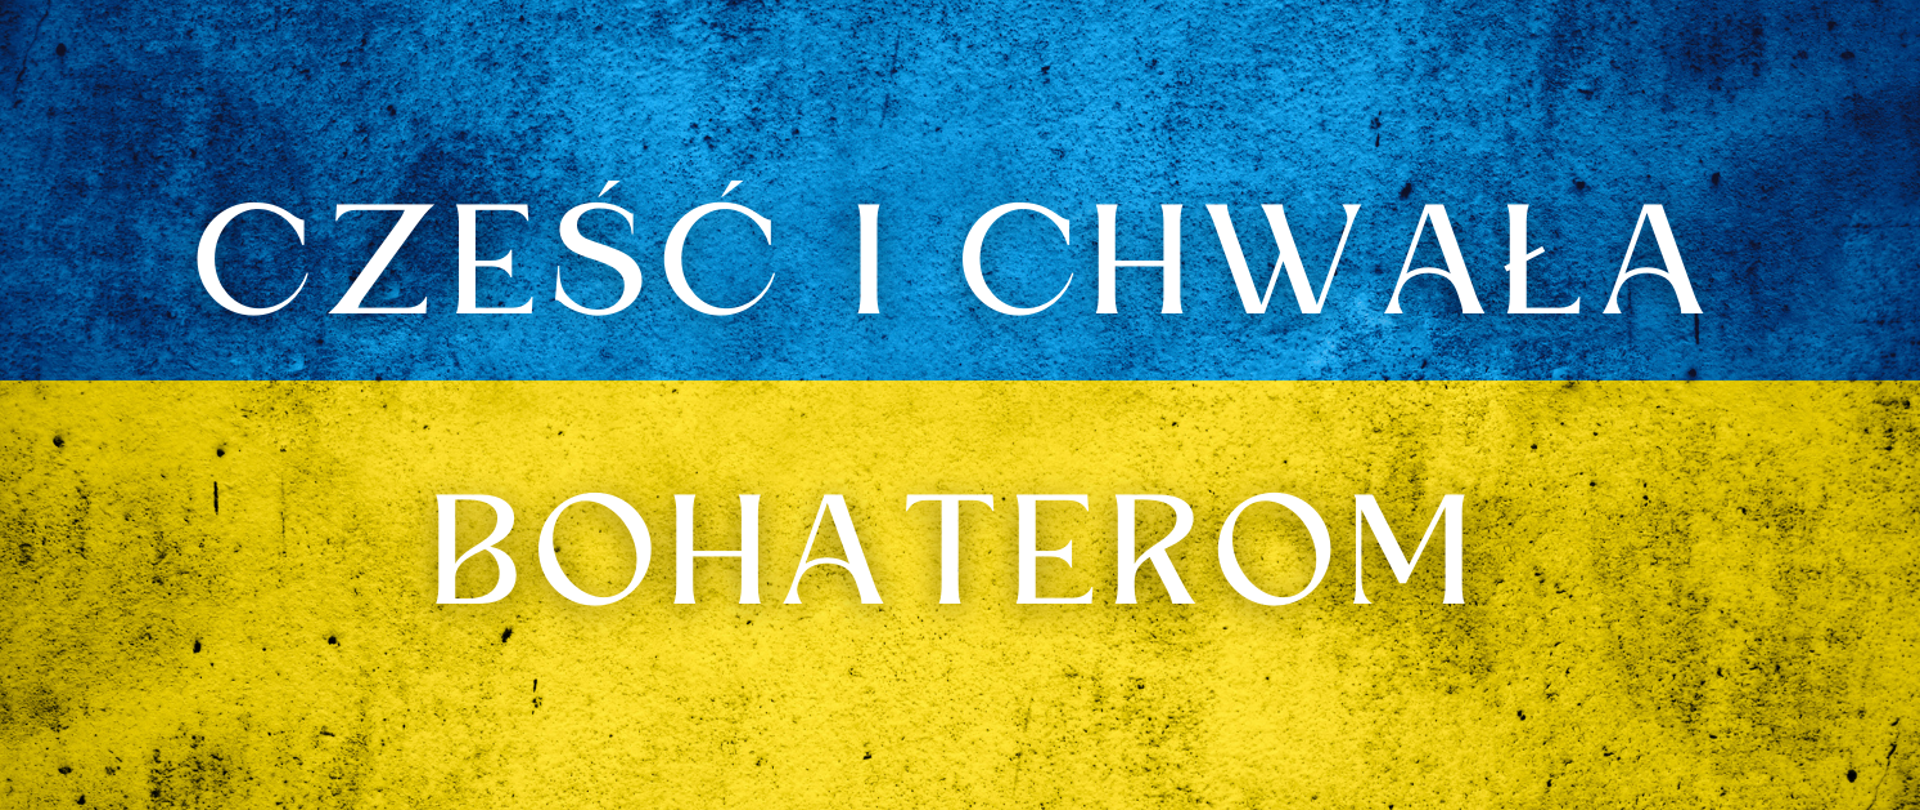 Flaga Ukrainy z napisem Cześć i Chwała Bohaterom